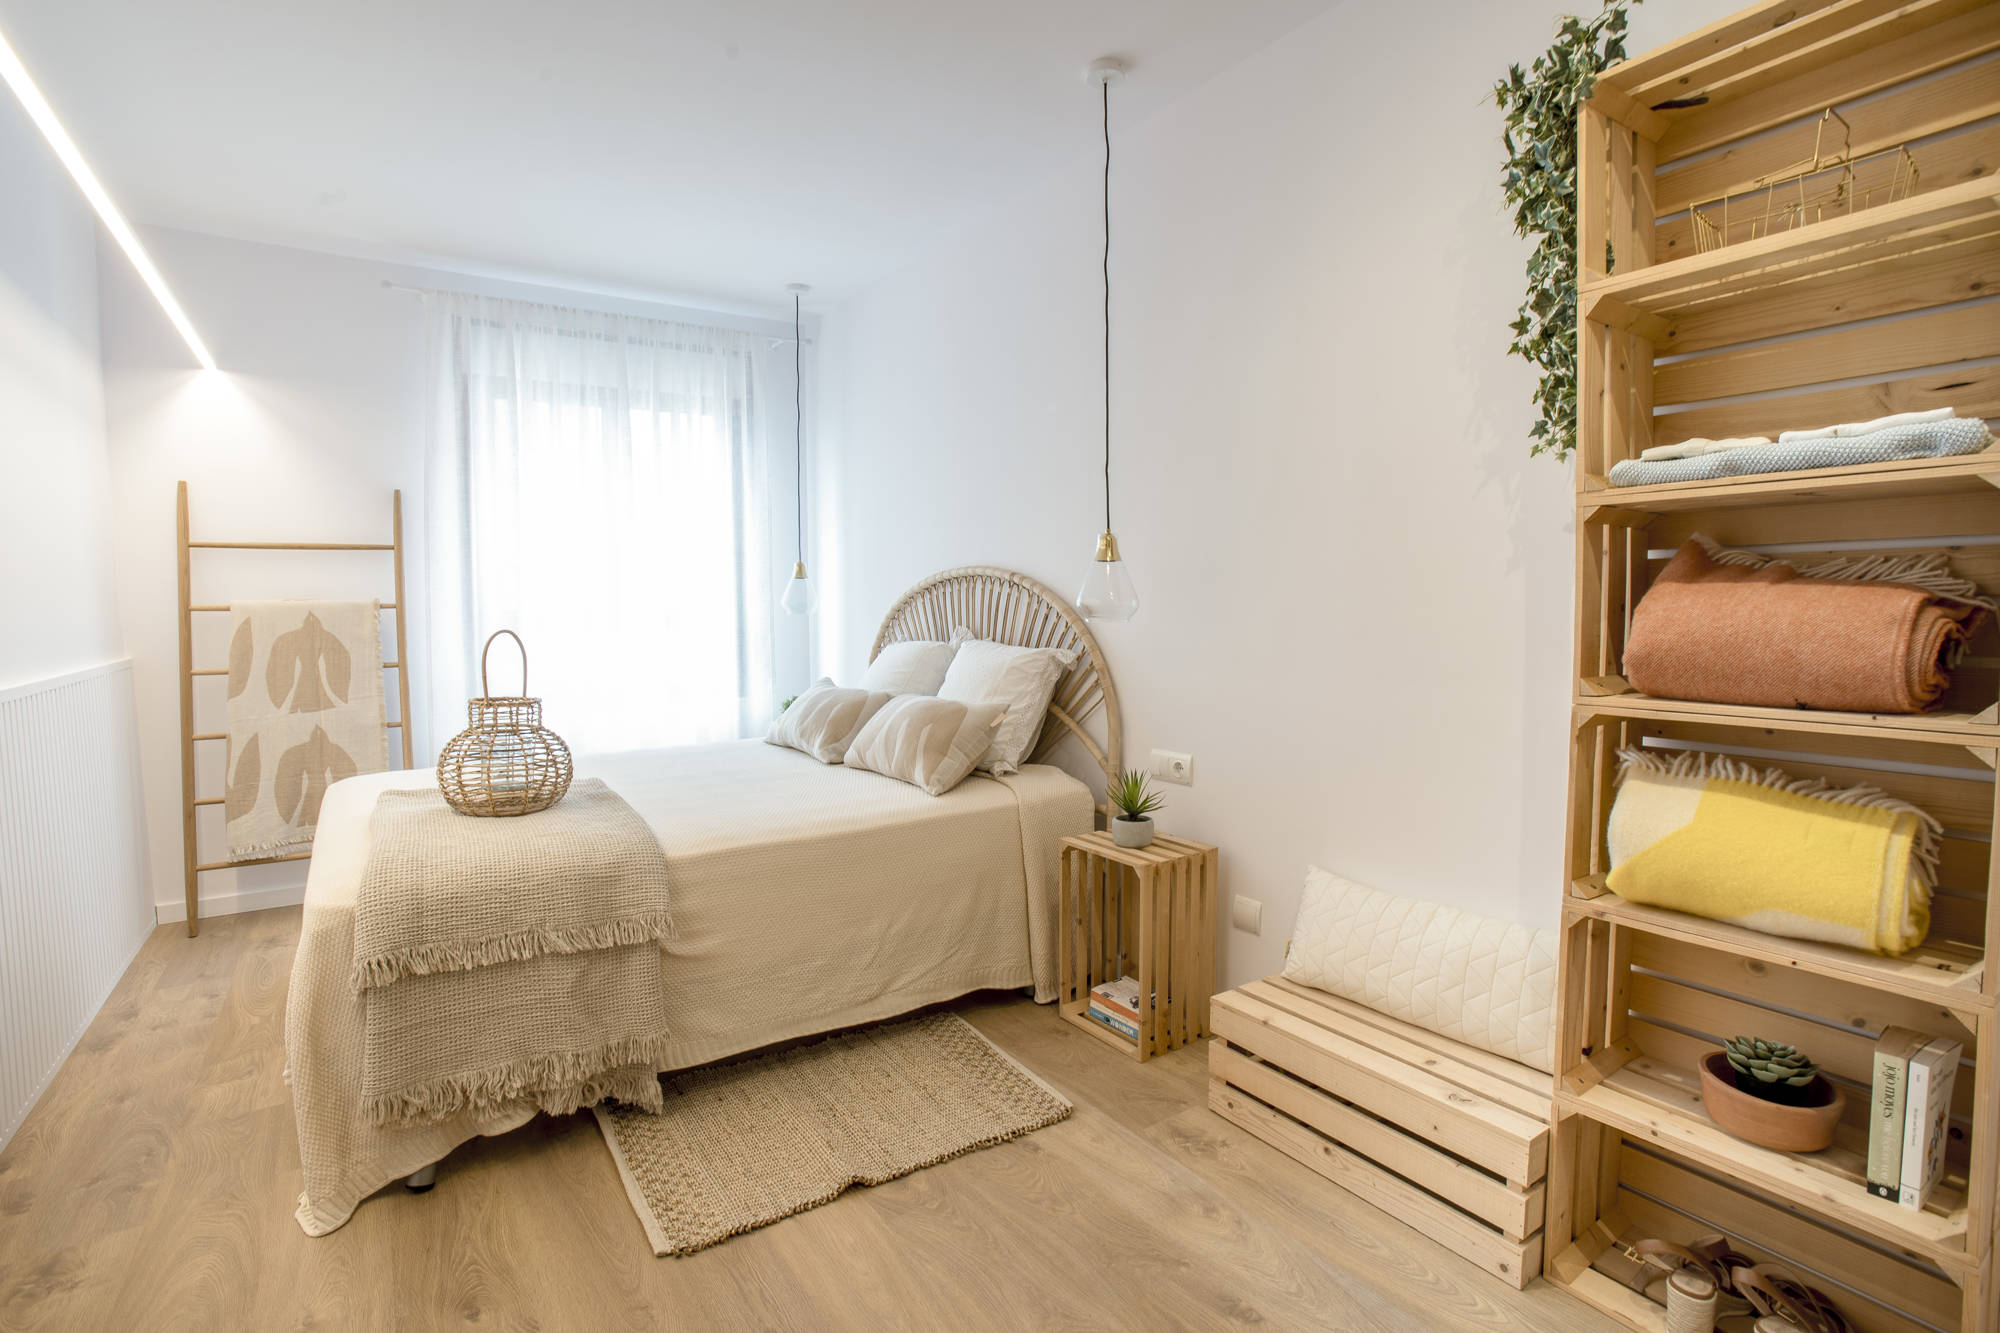 Dormitorio principal con madera y estantería DIY.